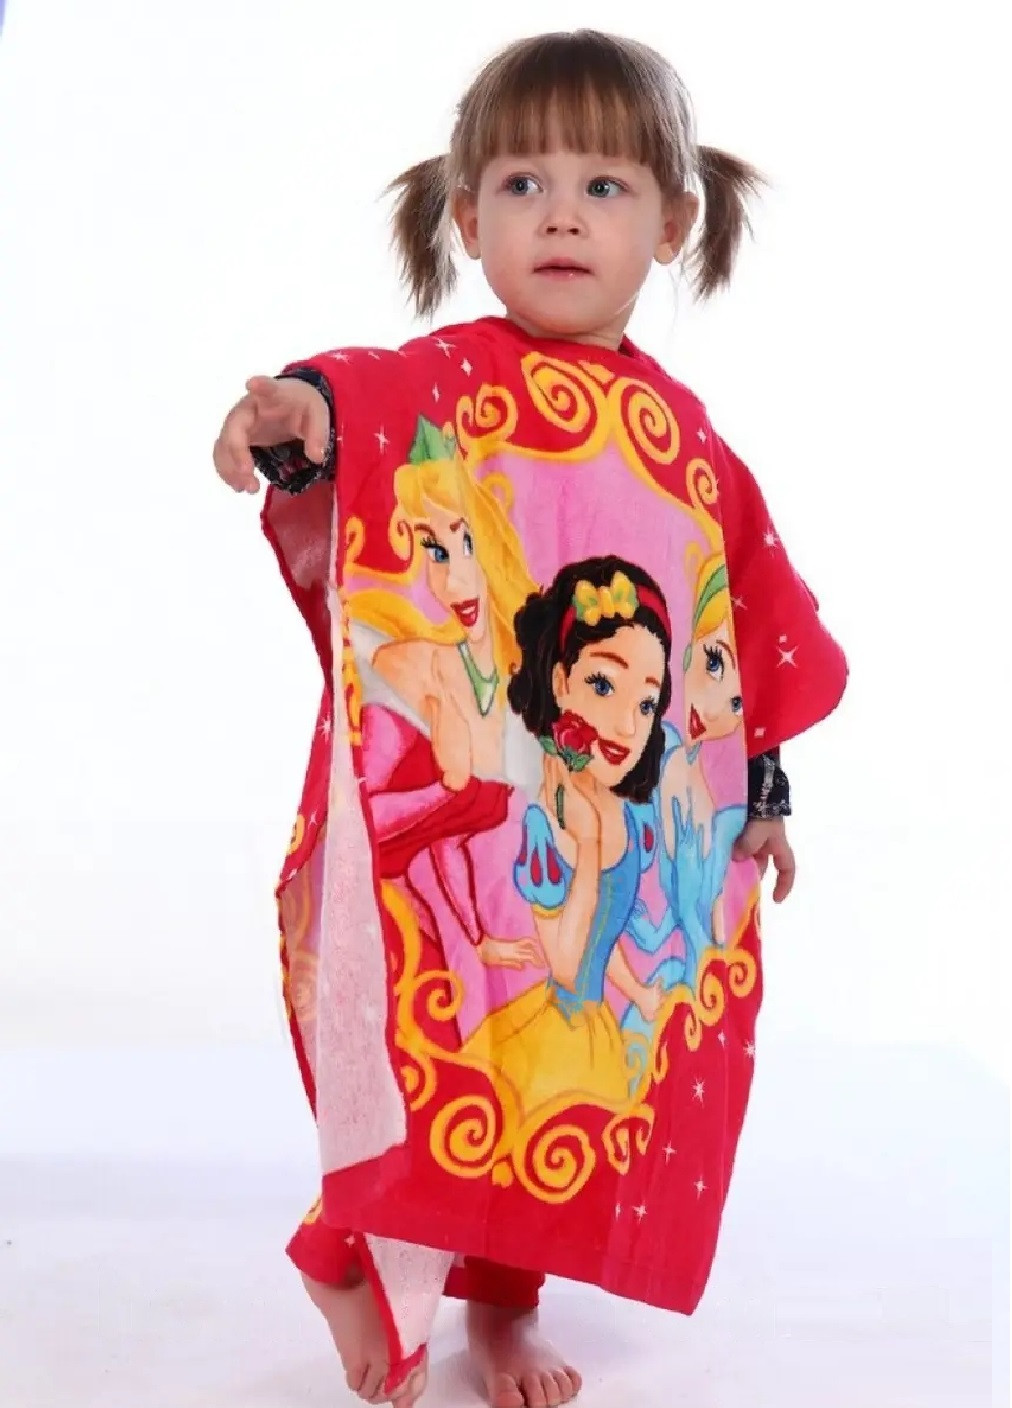 Unbranded детское пляжное полотенце пончо с капюшоном велюр махра для ванной бассейна пляжа 60х60 см (474684-prob) принцессы рисунок красный производство -